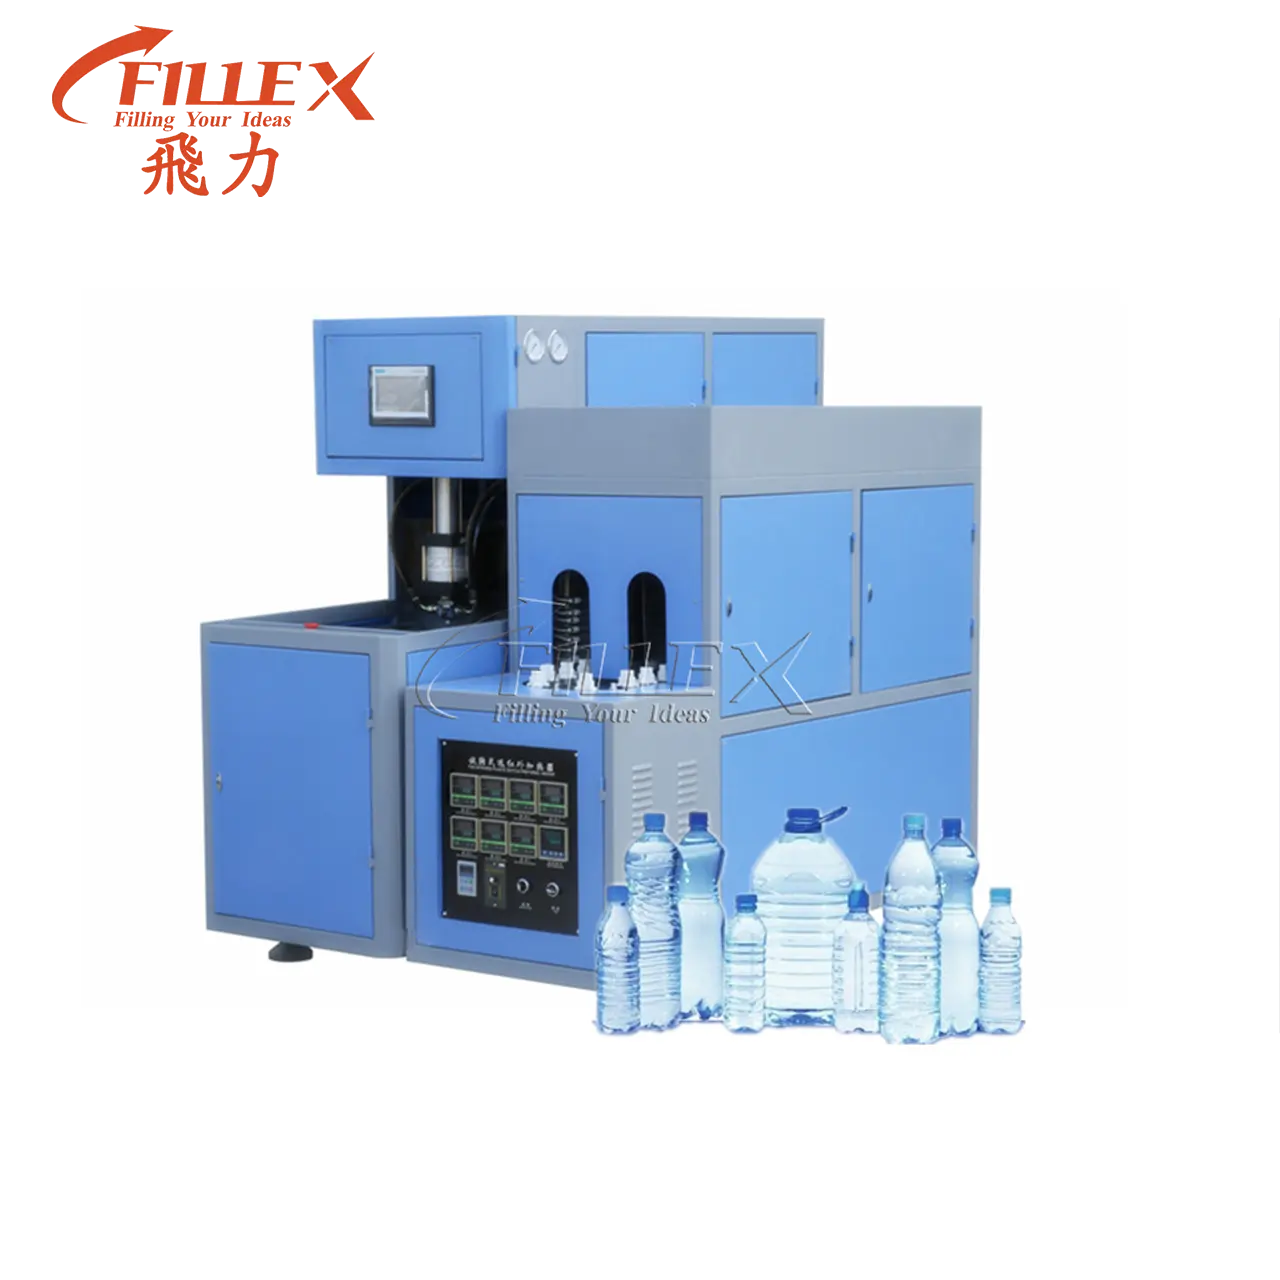 Machine Semi-automatique pour fabrication de bouteilles en plastique de 20 litres, appareil de moulage par Extrusion, de très bonne qualité, livraison gratuite